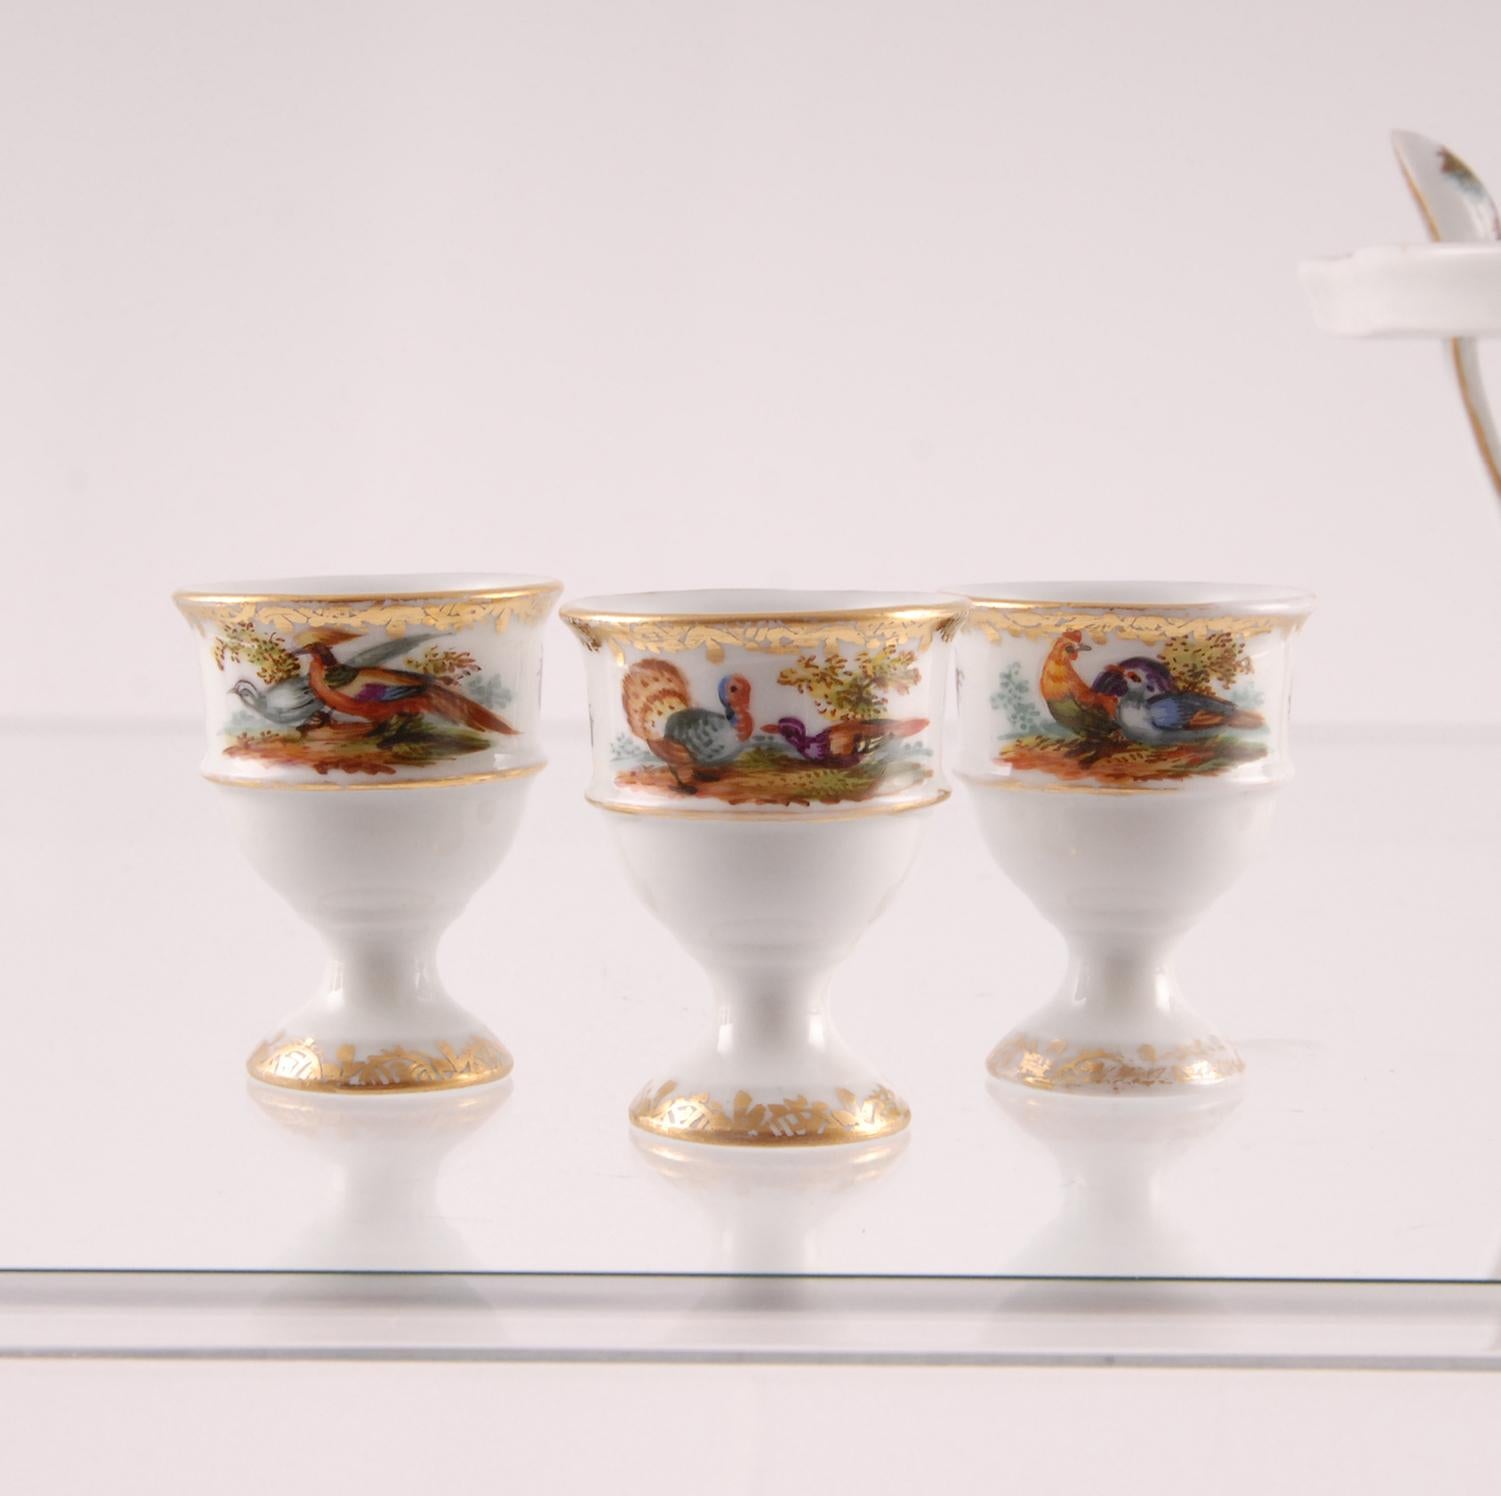 Porcelain Egg Stand Cruet 18th century Meissen Style Victorian German Handmade 3